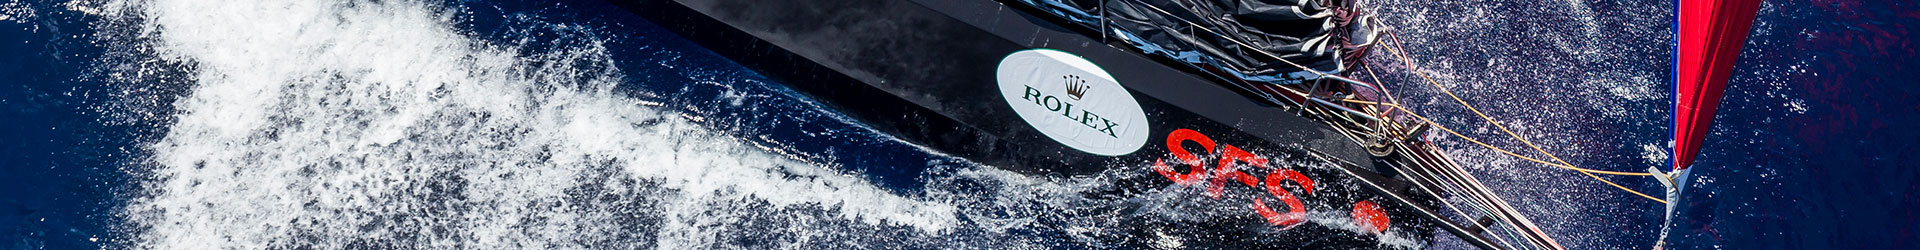 regatta official website | Rolex Giraglia results | Rolex Giraglia dates